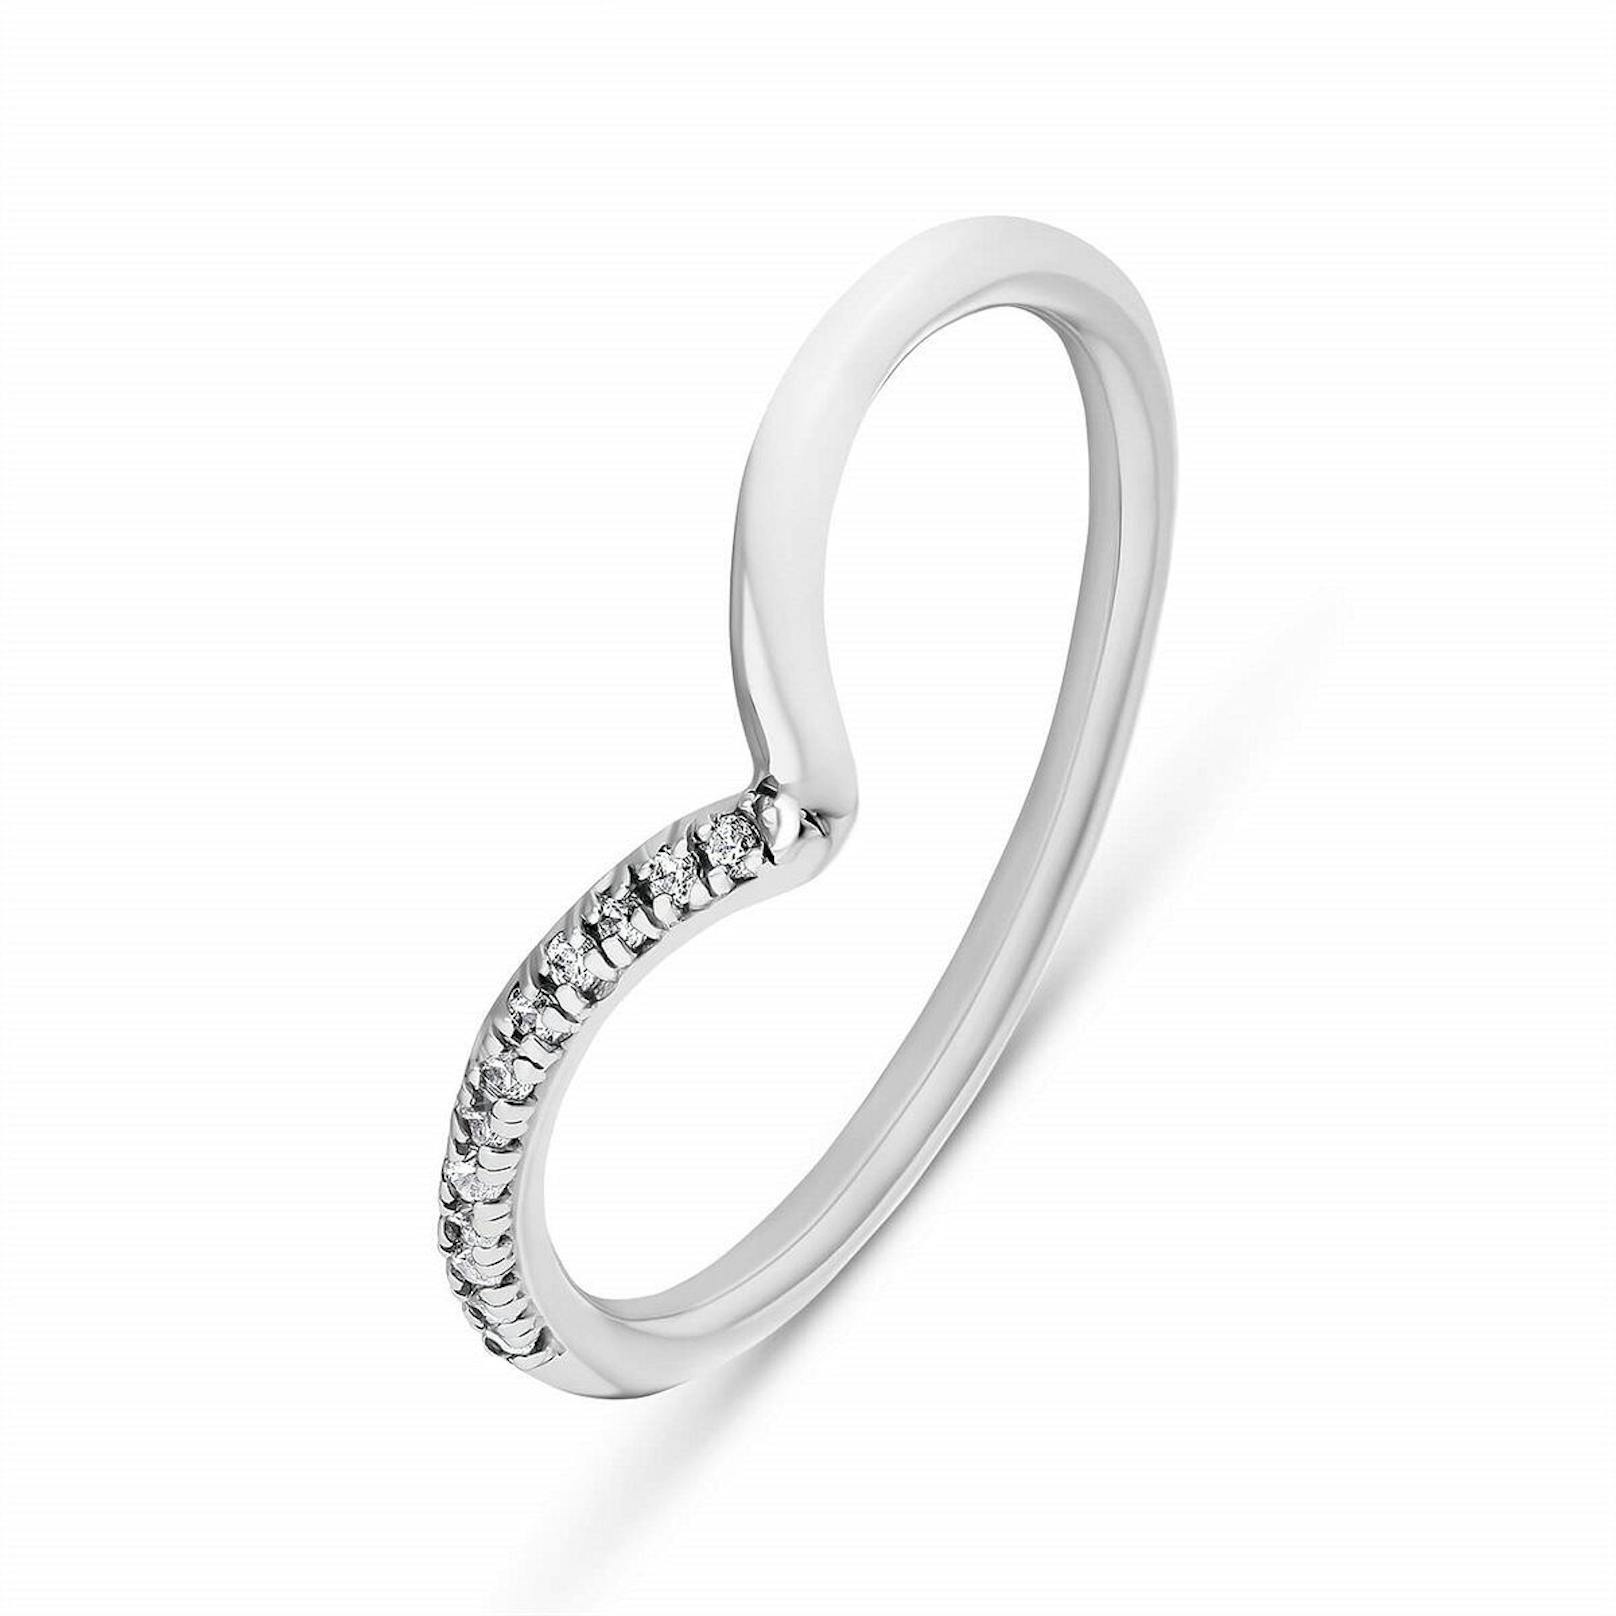 Ring Brillanten, silber, 399 Euro<br>